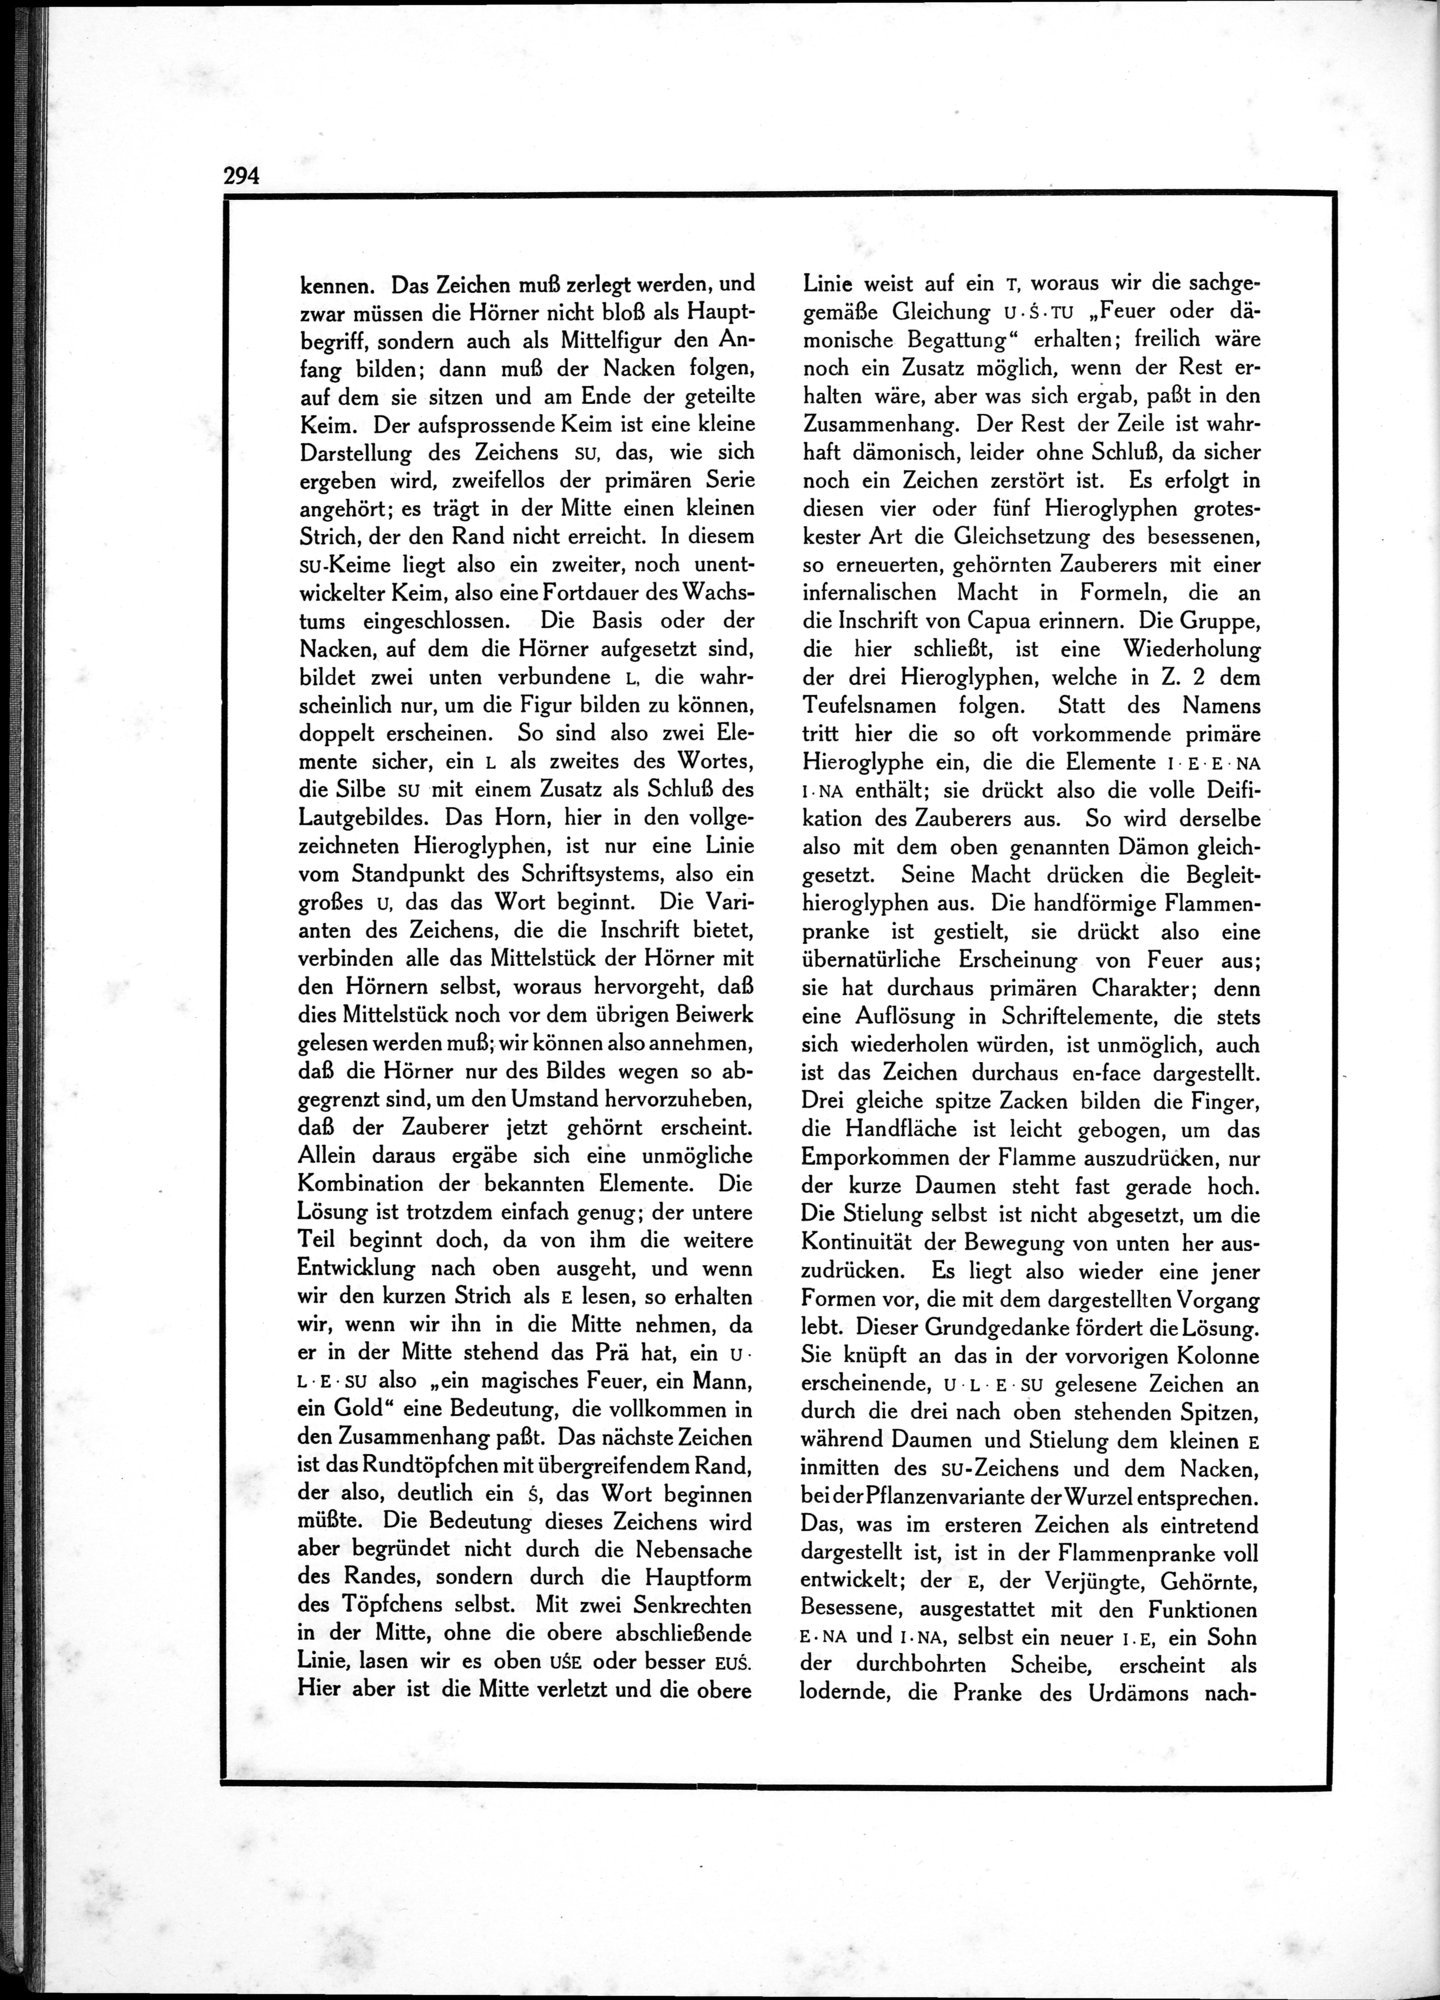 Die Teufel des Avesta und Ihre Beziehungen zur Ikonographie des Buddhismus Zentral-Asiens : vol.1 / Page 298 (Grayscale High Resolution Image)